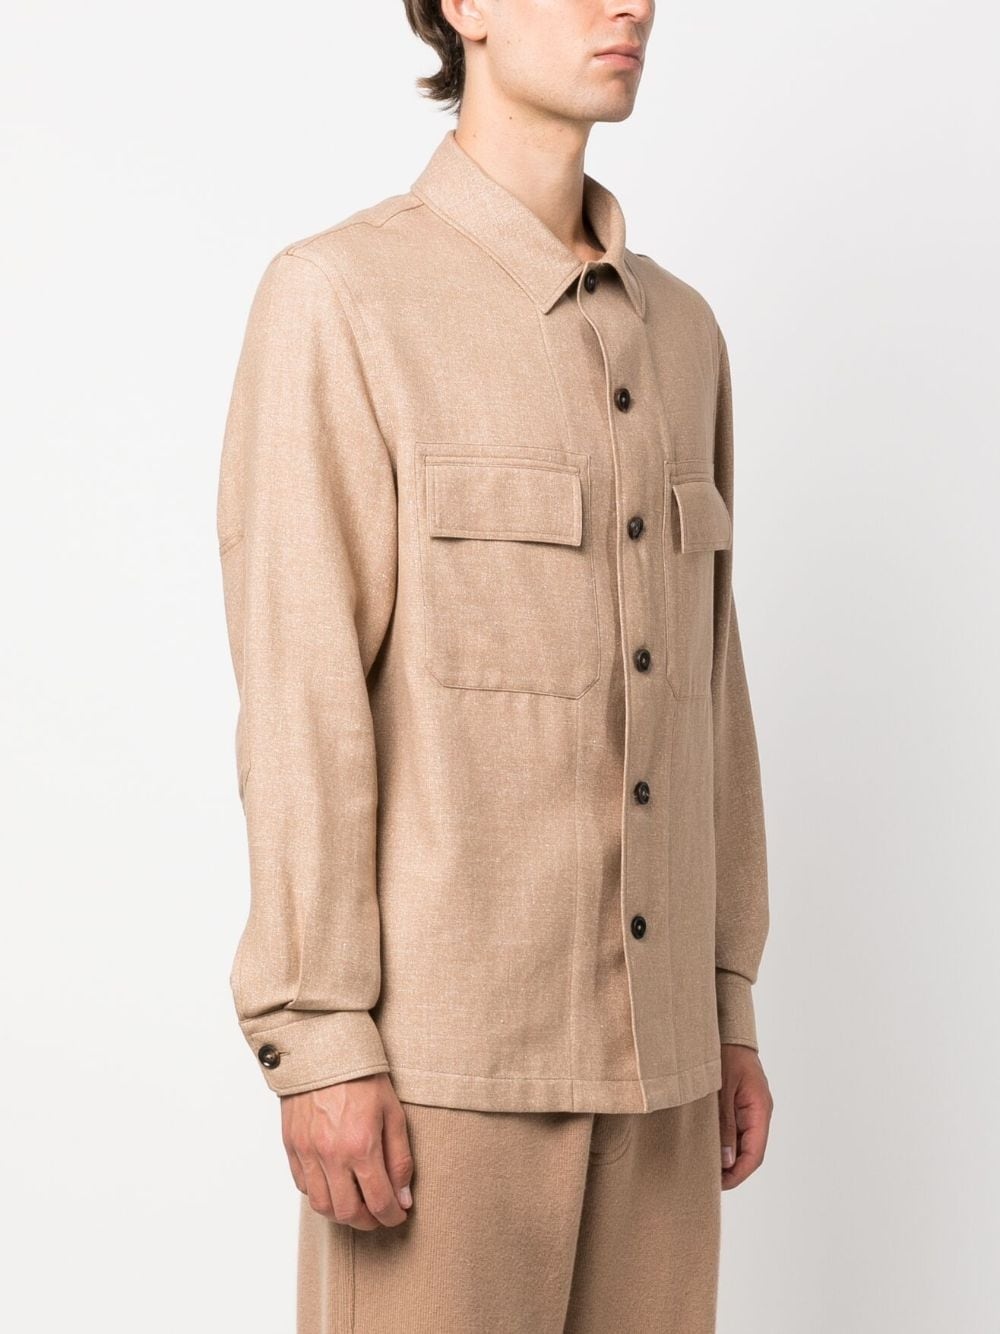 long-sleeve cashmere jacket - 3